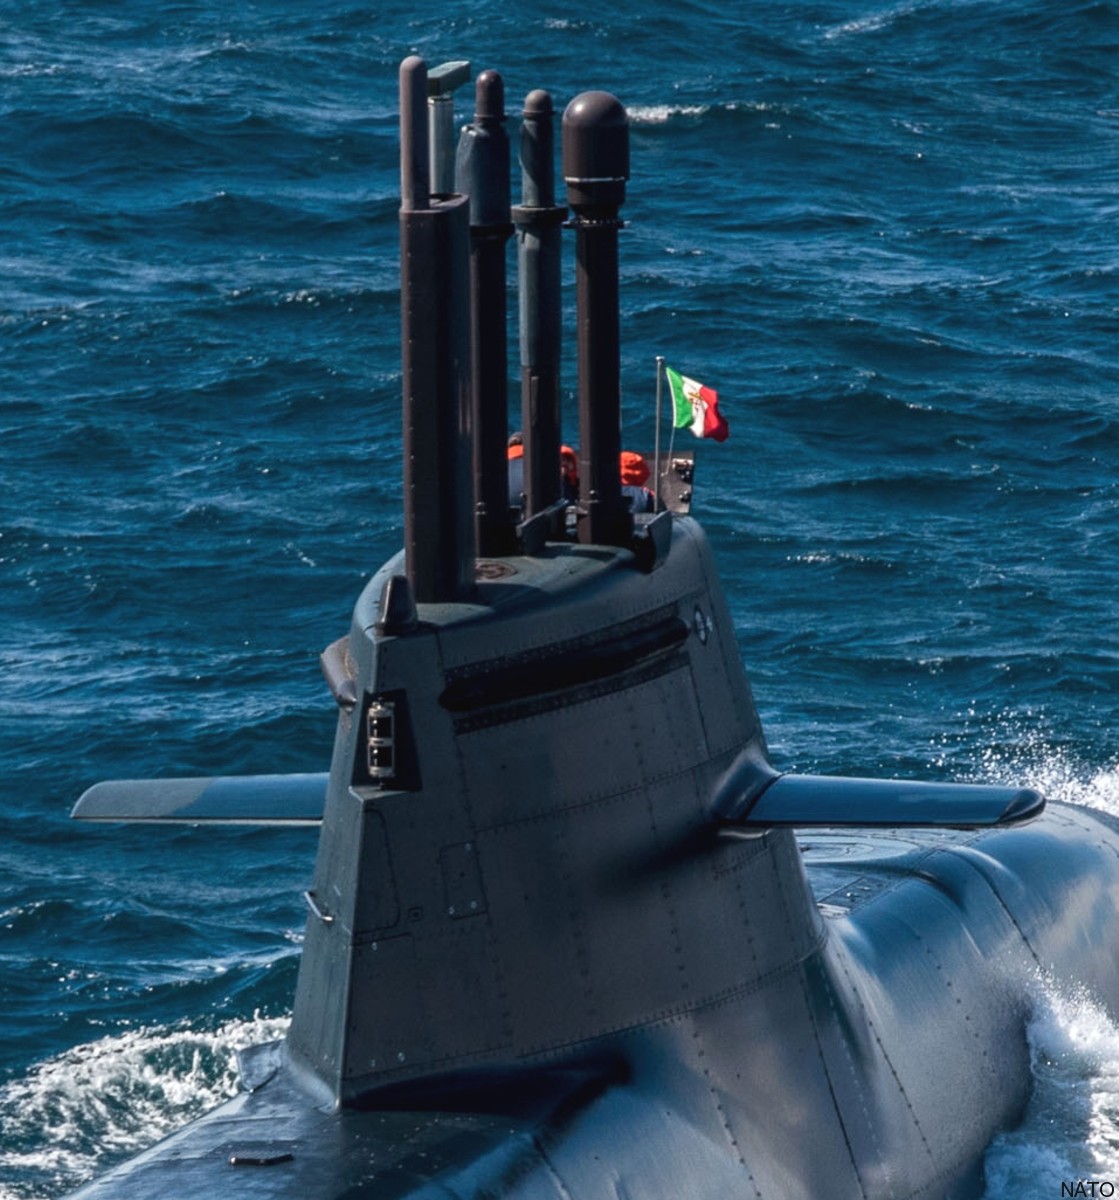 s-529 romeo romei todaro type 212 class submarine its smg italian navy marina militare 10a periscopes